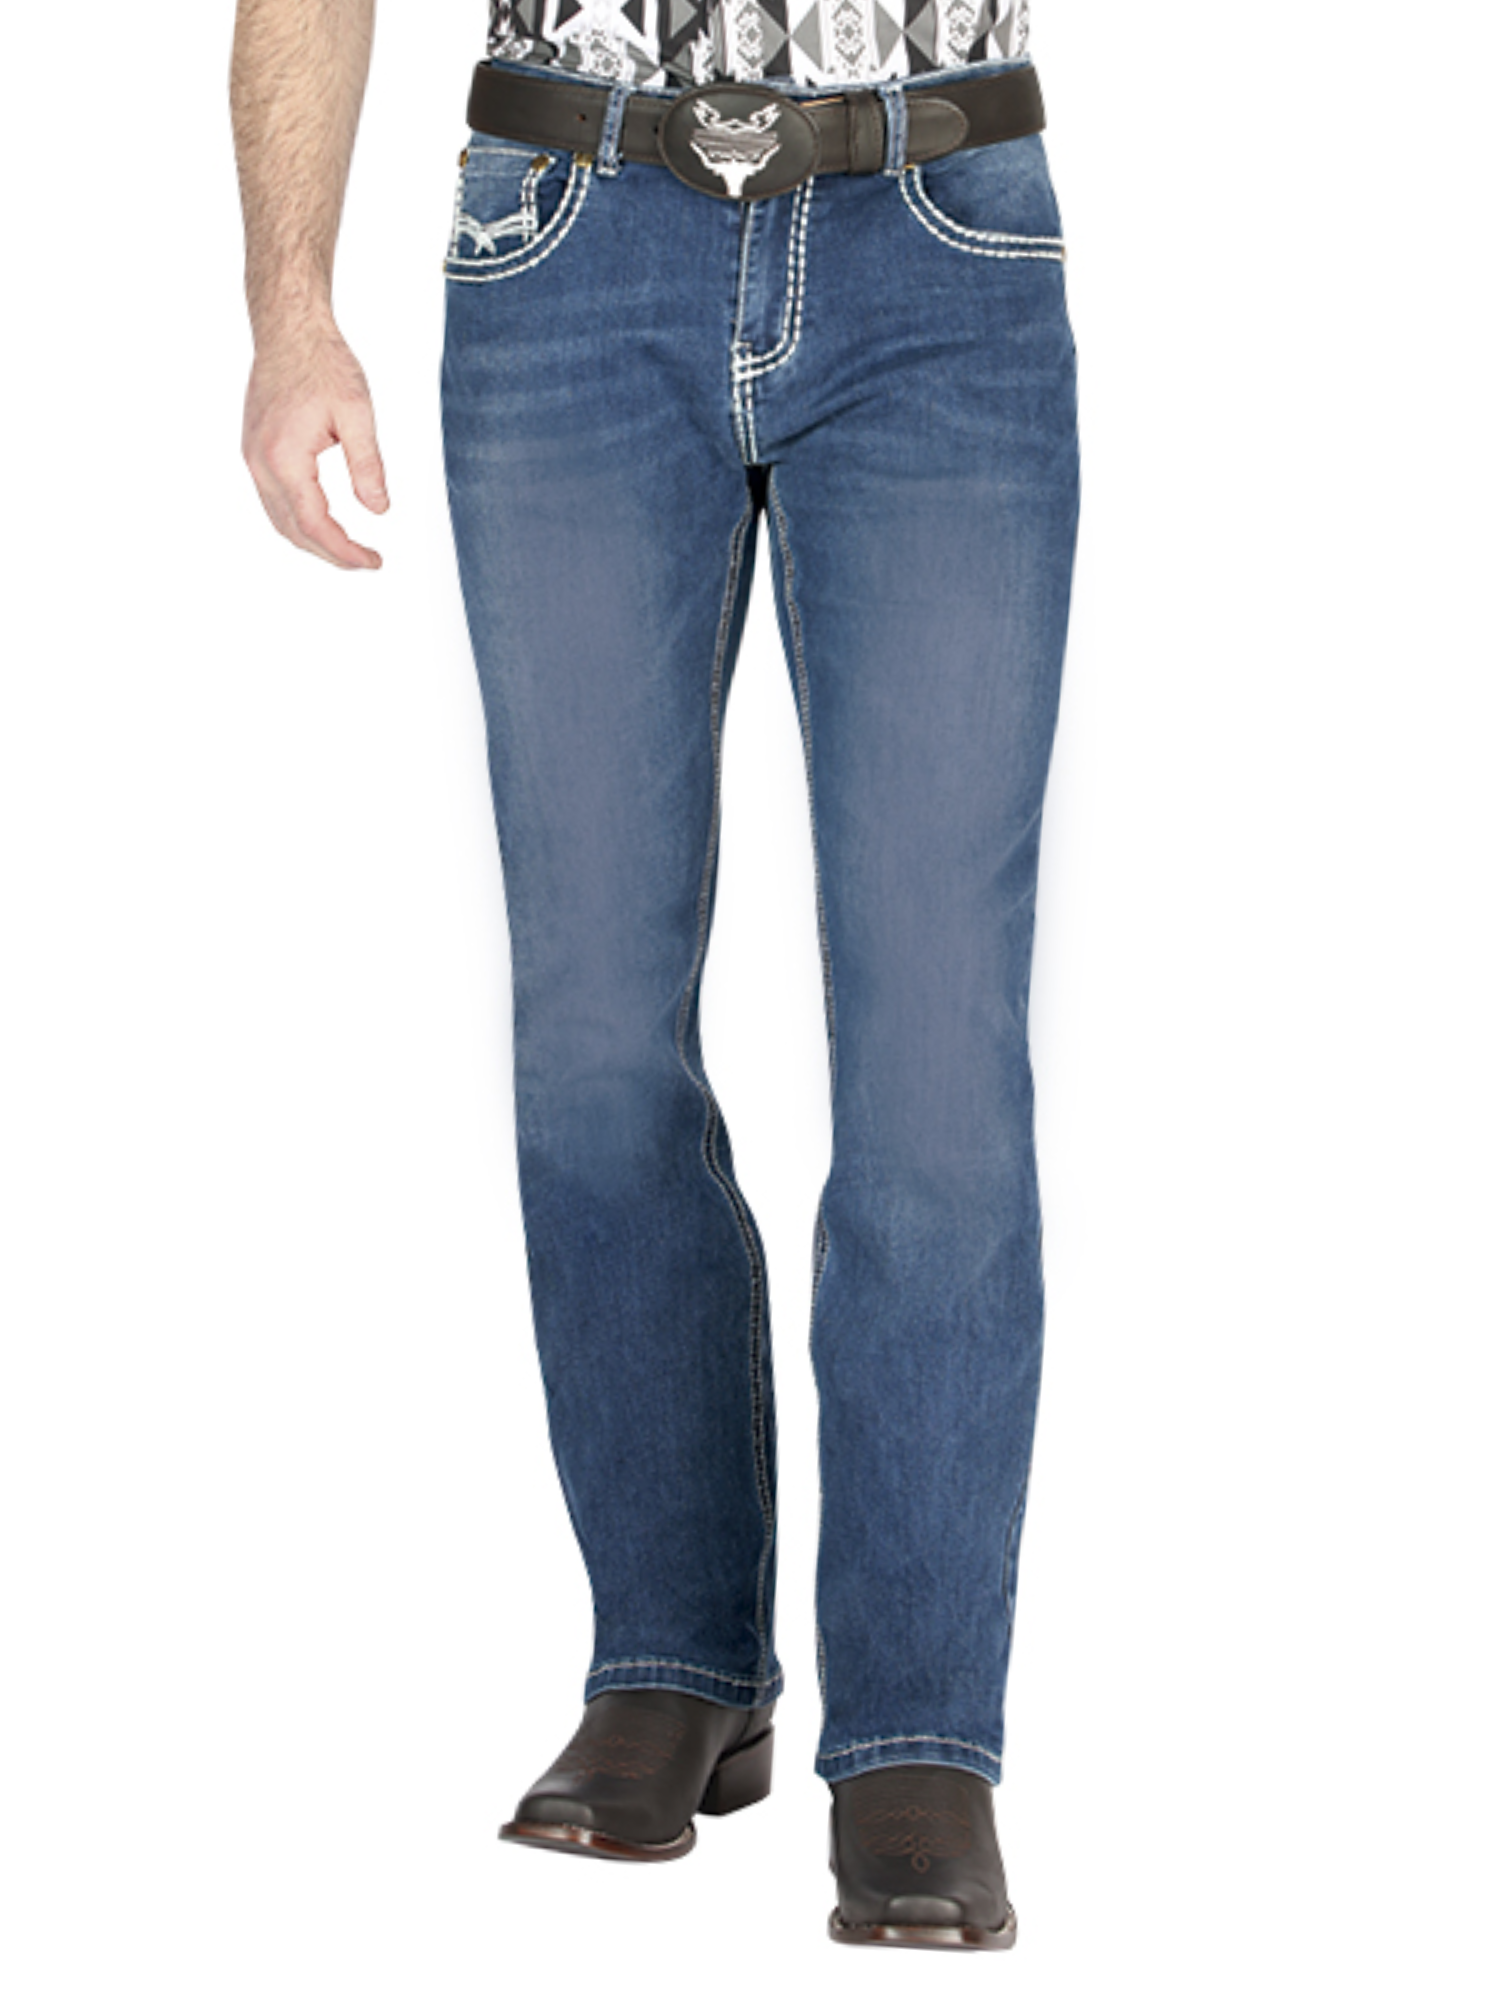 Pantalon Vaquero de Mezclilla Boot Cut Azul para Hombre 'Centenario' - ID: 44845 Denim Jeans Centenario 